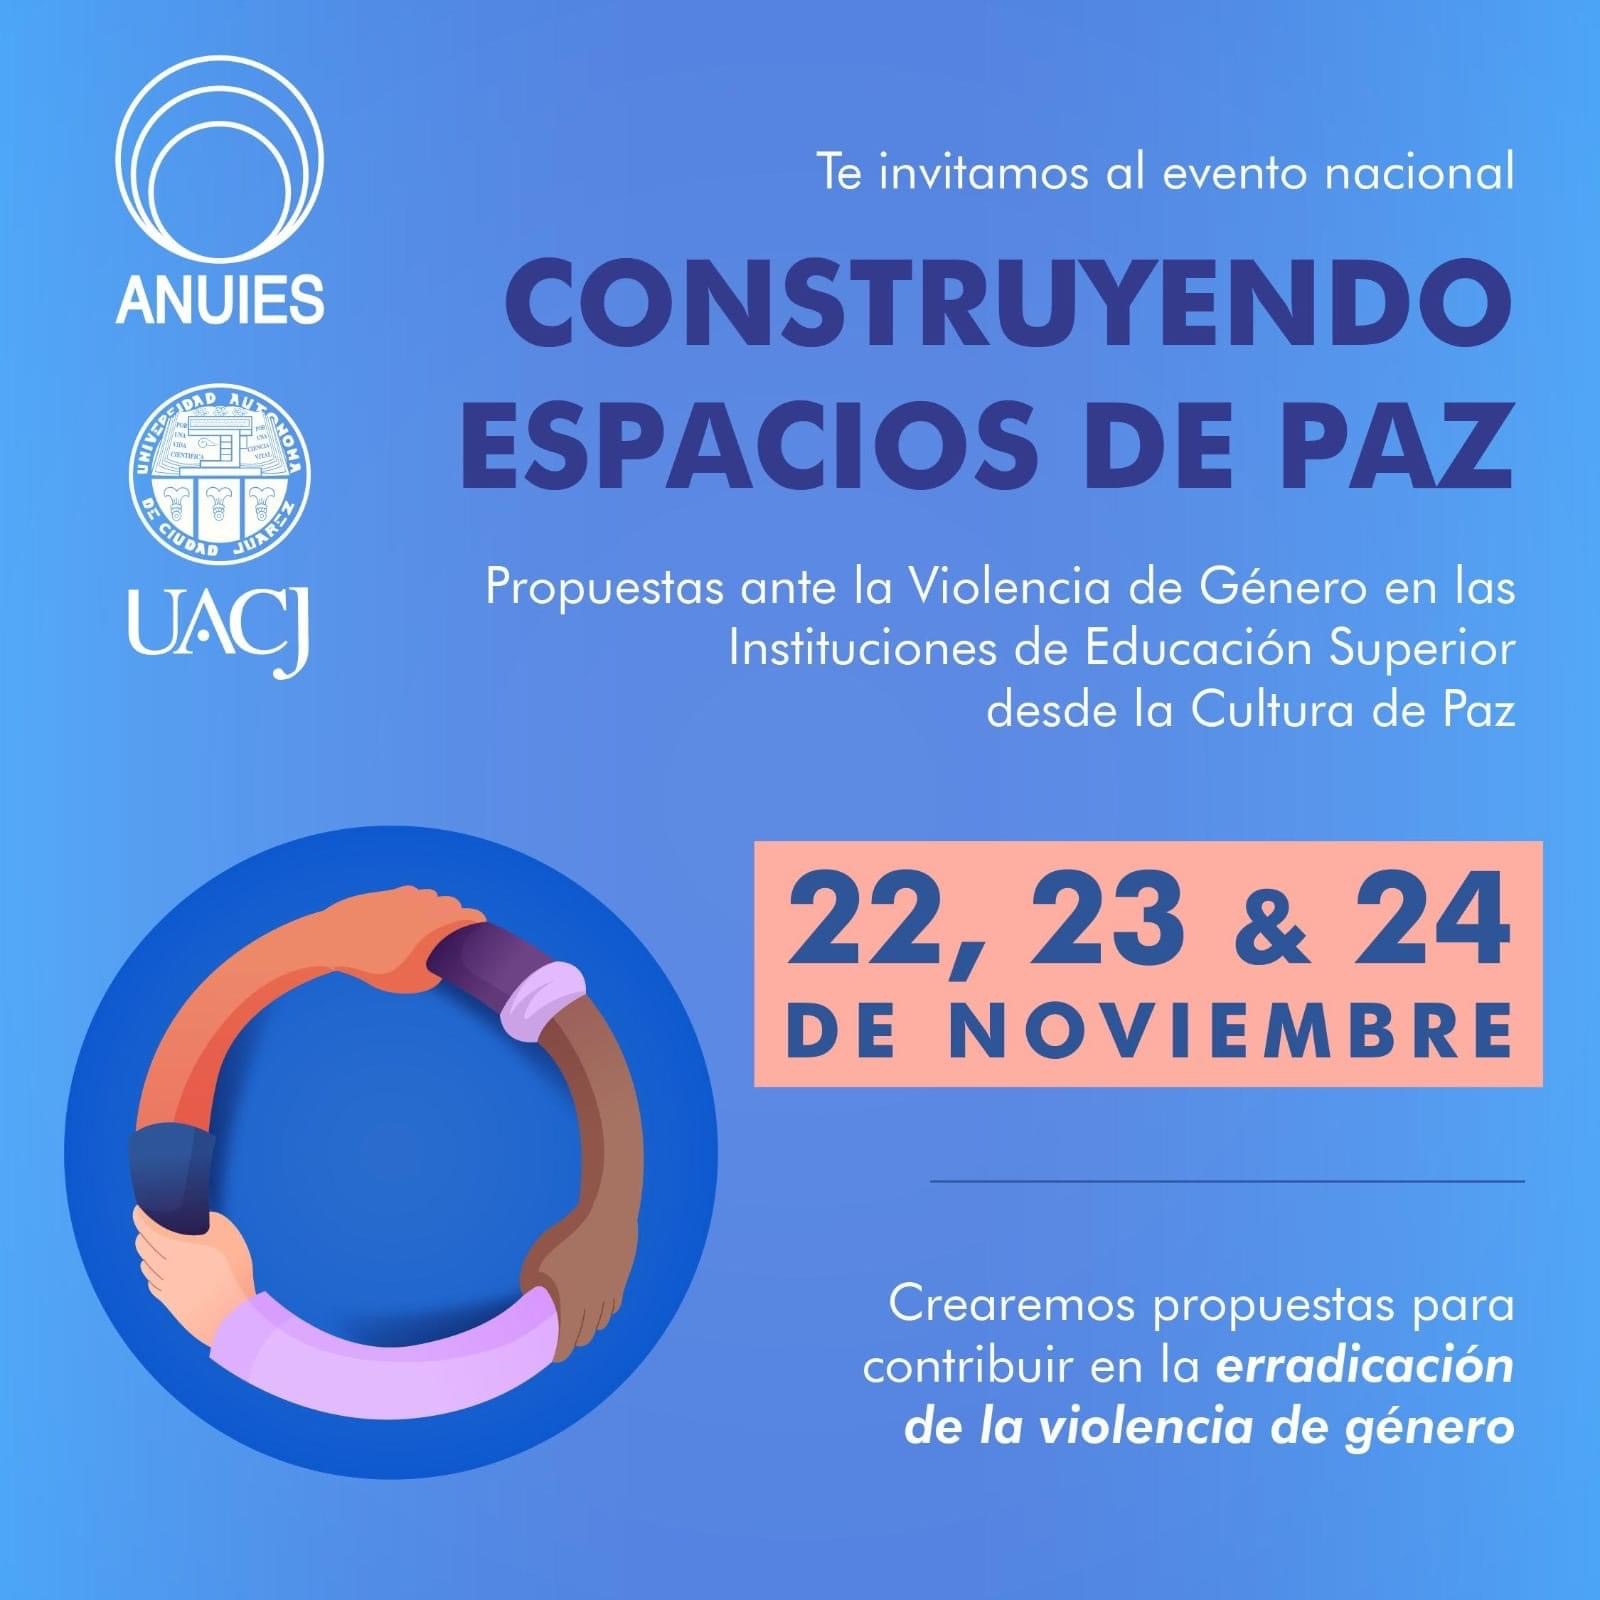 ANUIES y Universidad Autónoma de Ciudad Juárez preparan el evento Nacional “Construyendo Espacios de Paz